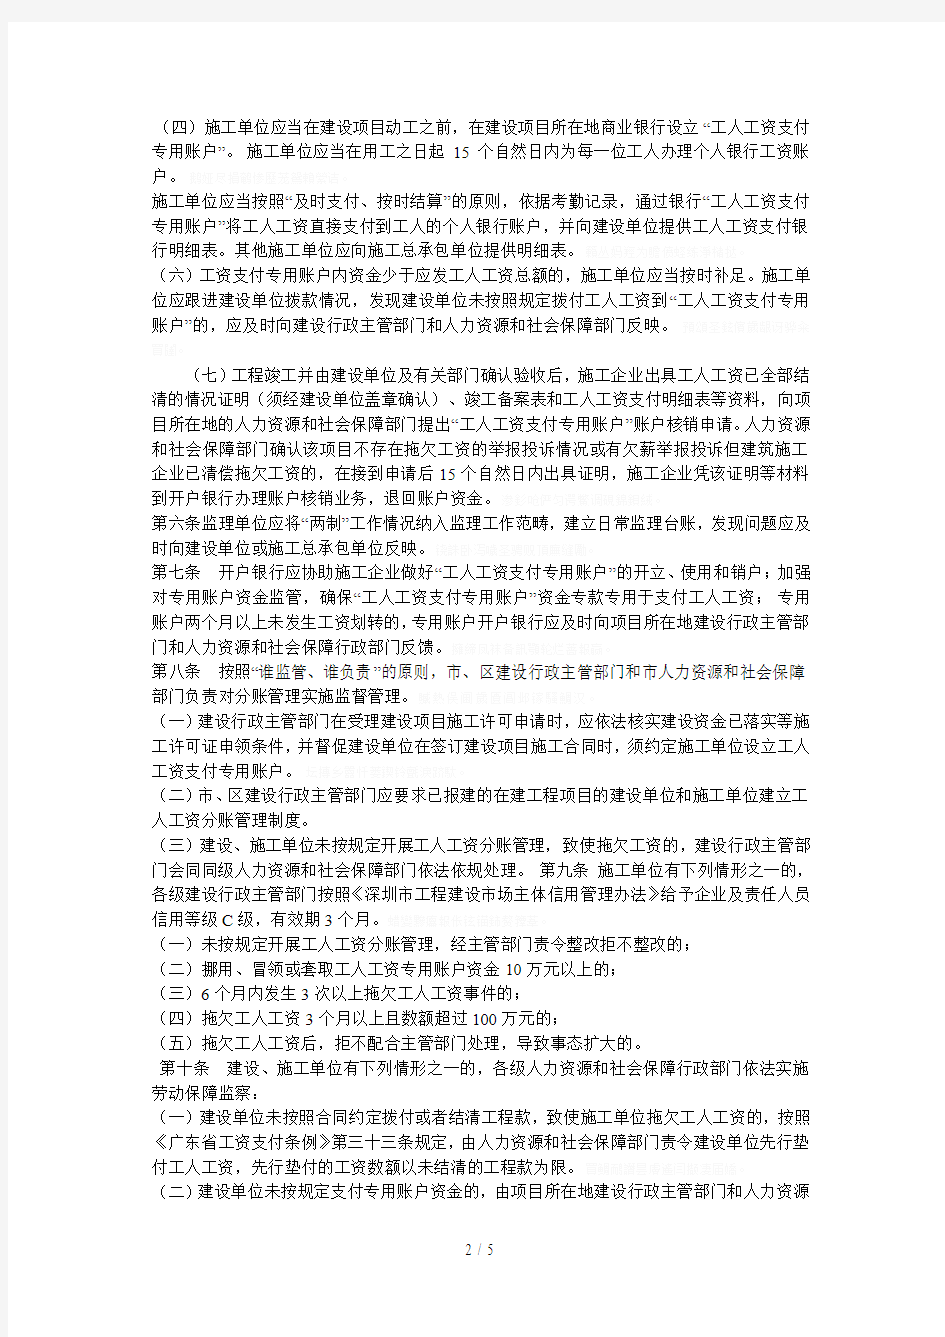 深圳市建设领域工人工资分账制管理办法[001]